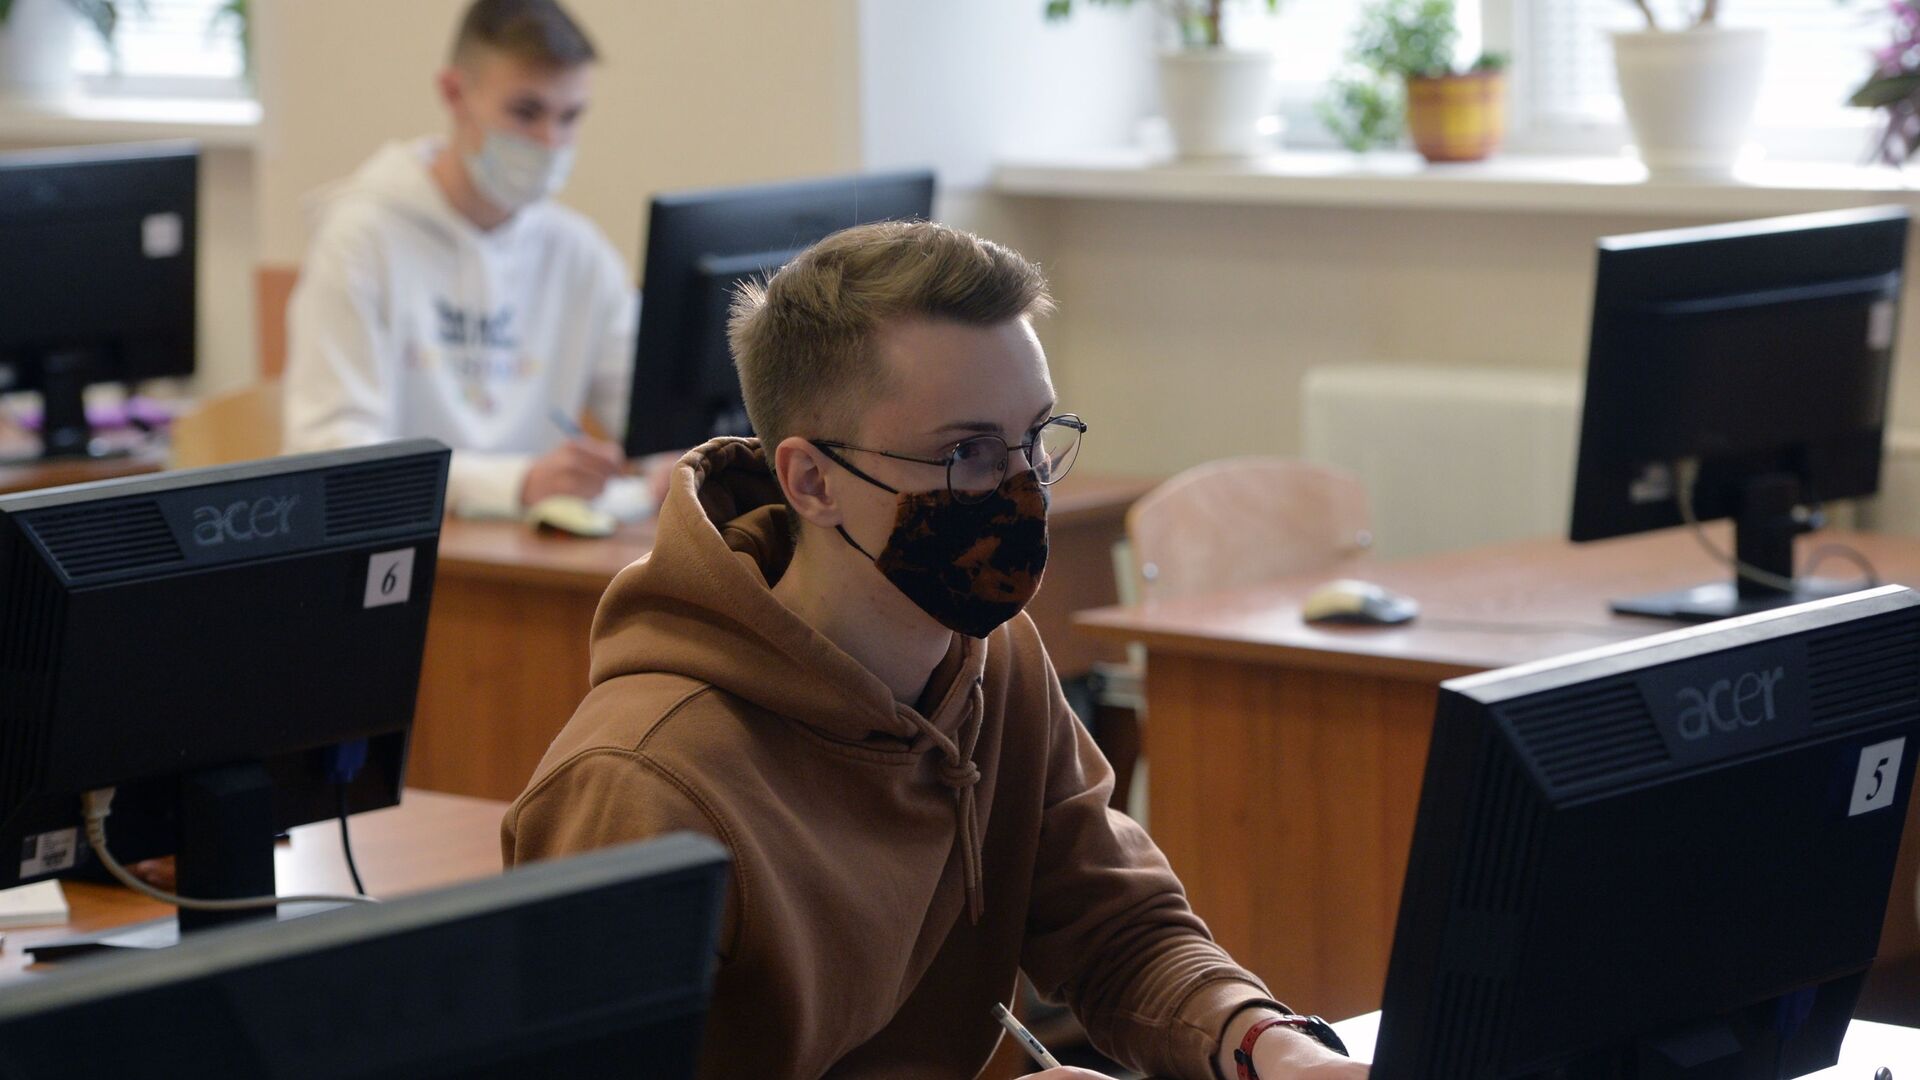 Студенты в защитных масках, архивное фото - Sputnik Казахстан, 1920, 05.08.2021